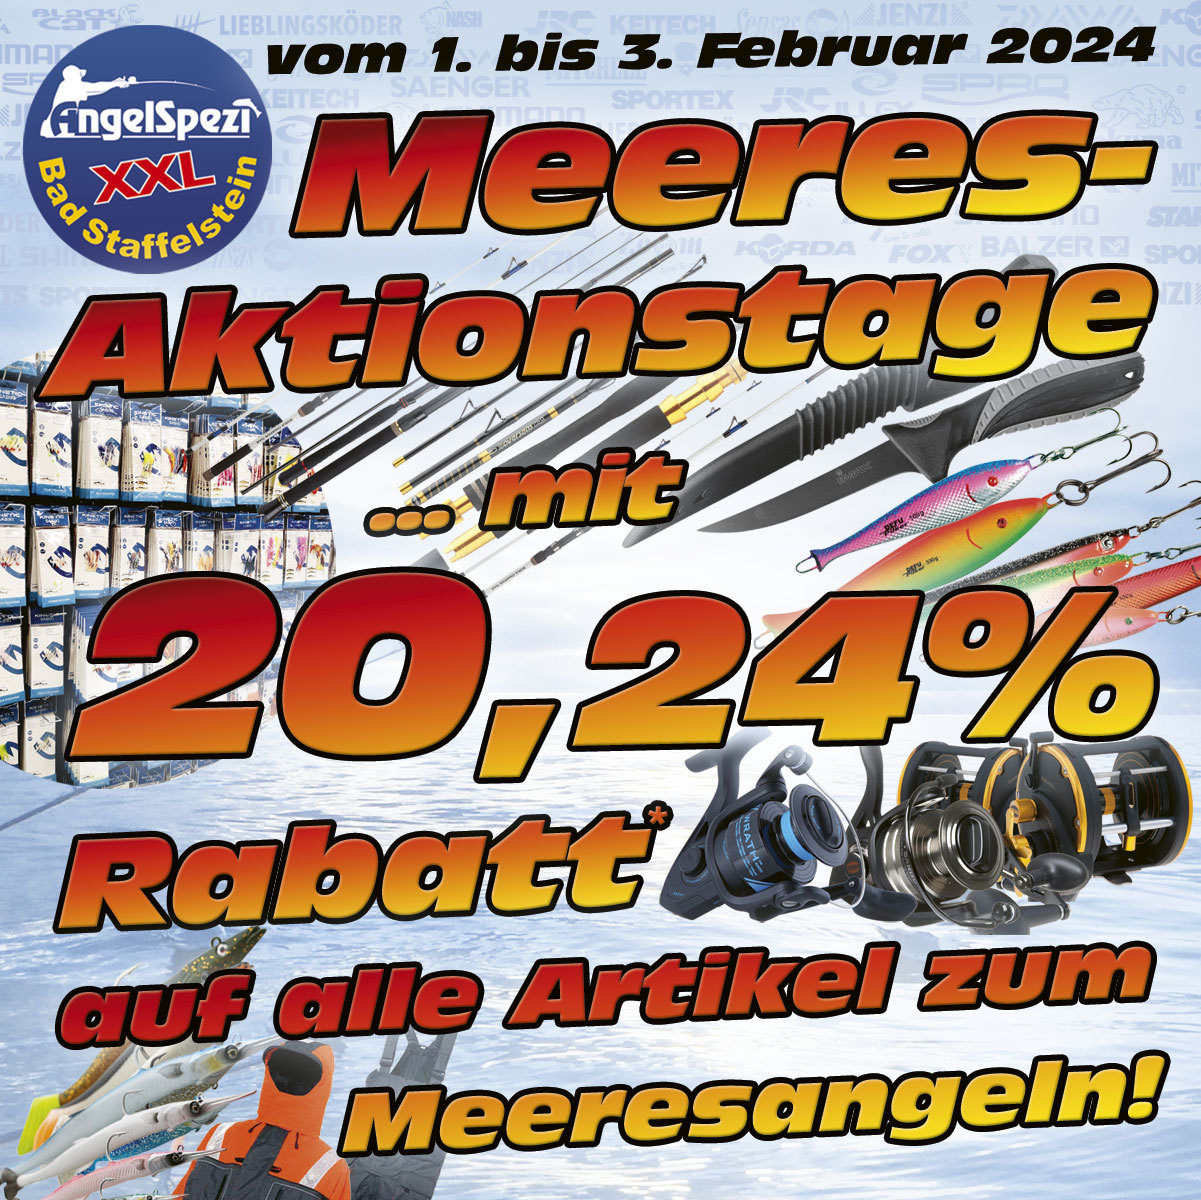 Meeresangel-Aktion im Spezi Bad Staffelstein vom 1. bis 3. Februar 2024